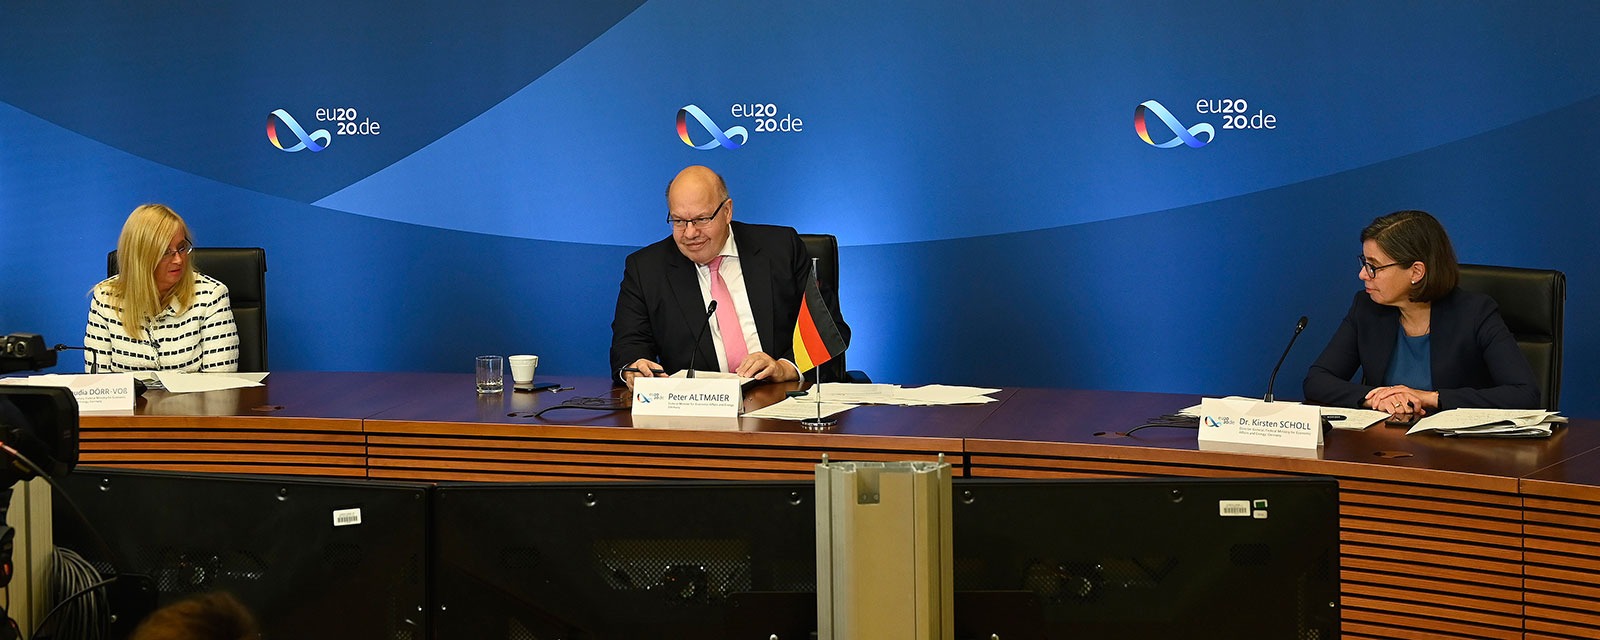 Peter Altmaier na konferencji o wodorze. Fot. Ministerstwo gospodarki i energetyki Niemiec